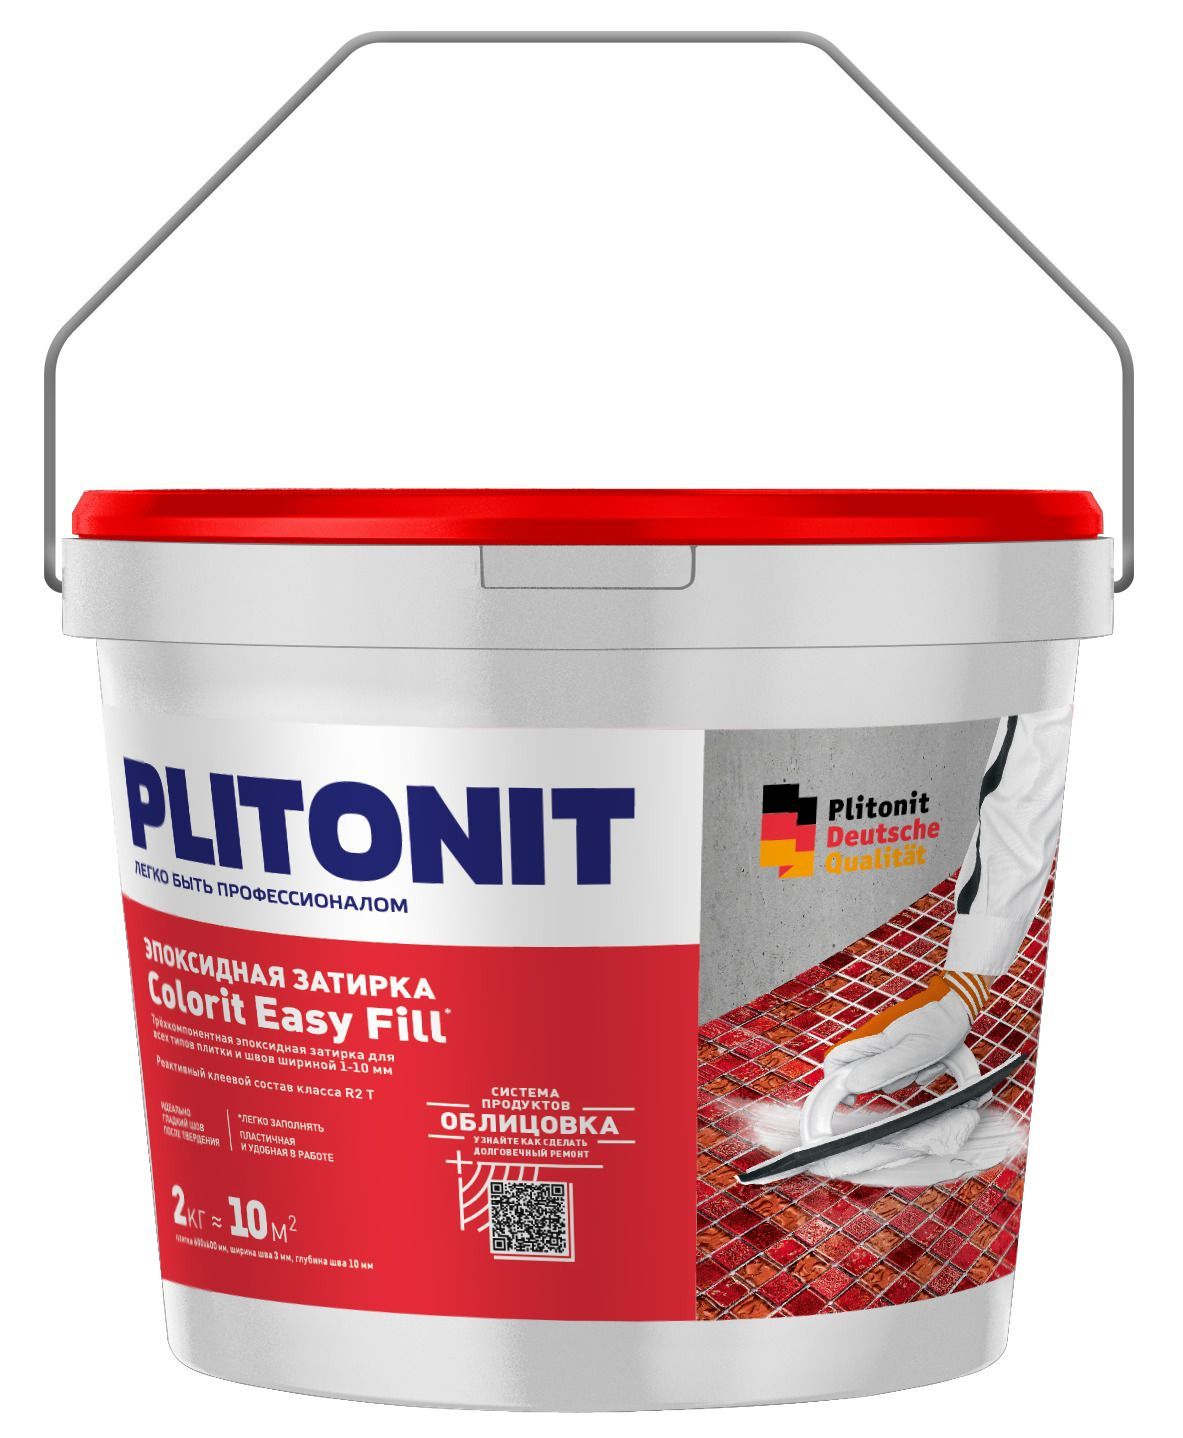 Купить Затирка эпоксидная PLITONIT Colorit EasyFill какао 2кг (ведро) Н008641